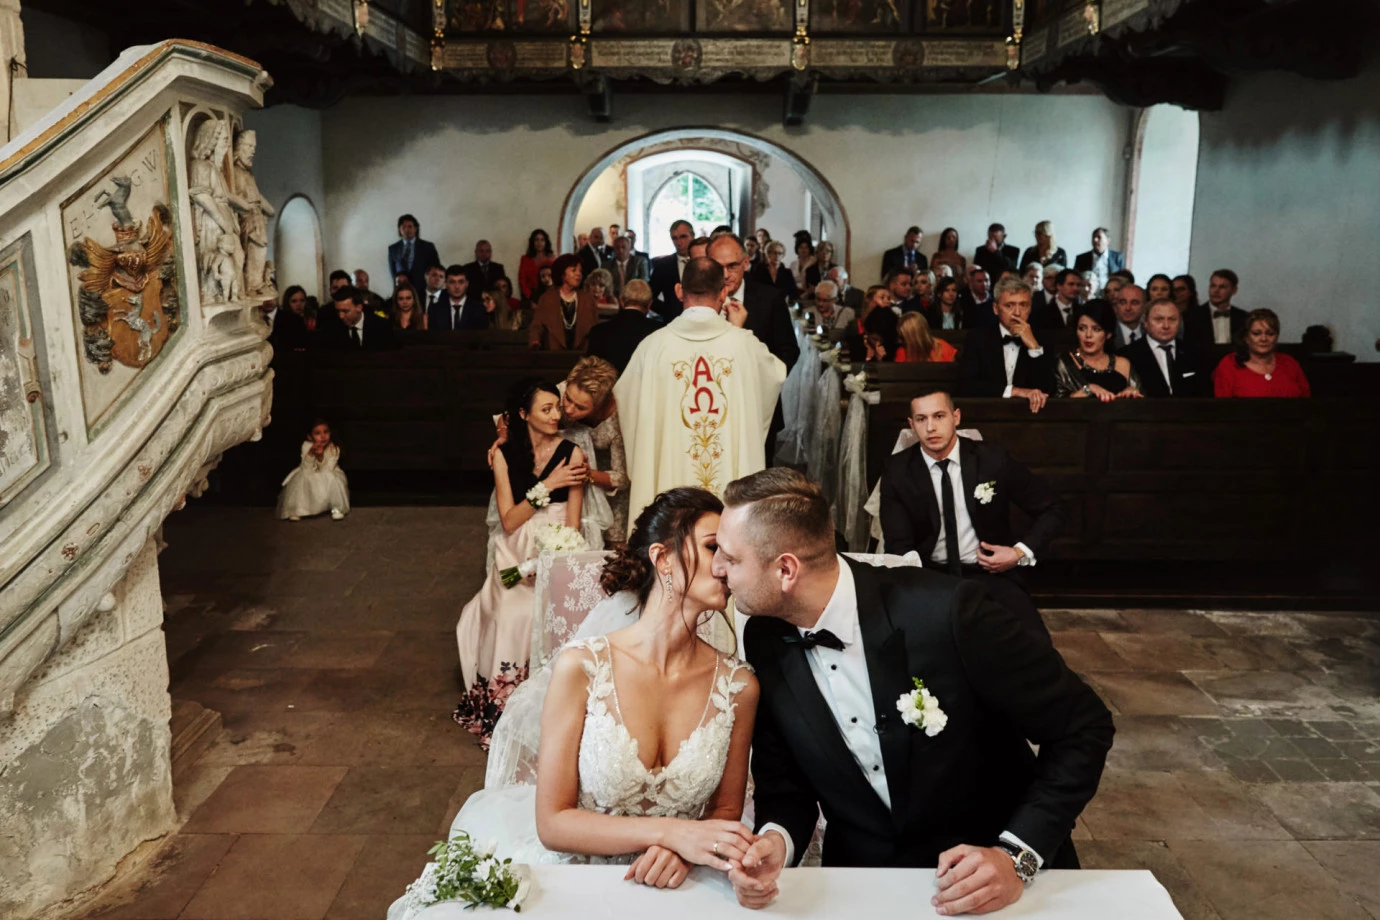 fotograf swinoujscie przemek-bialek-fotografia portfolio zdjecia slubne inspiracje wesele plener slubny sesja slubna